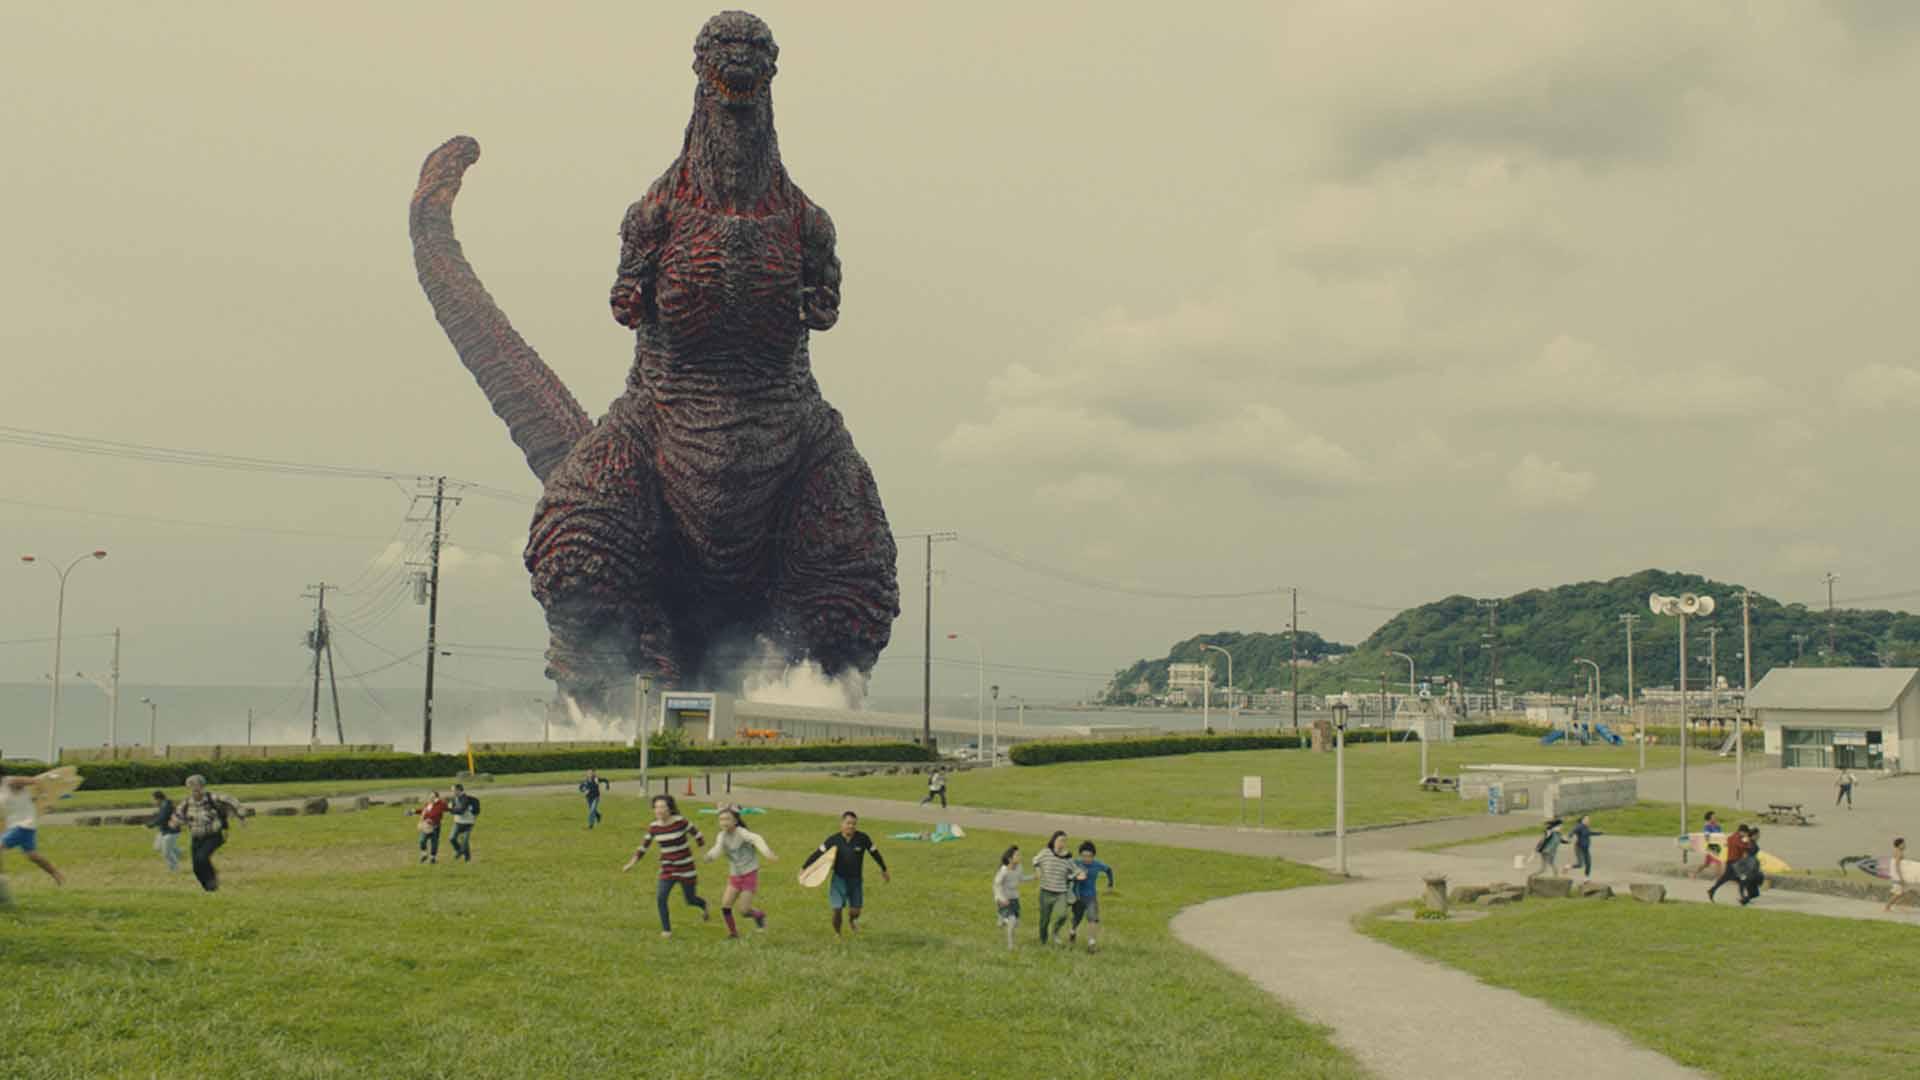 گودزیلای غول پیکر در حال ترساندن مردم و قدم زدن در شهر در فیلم Shin Godzilla